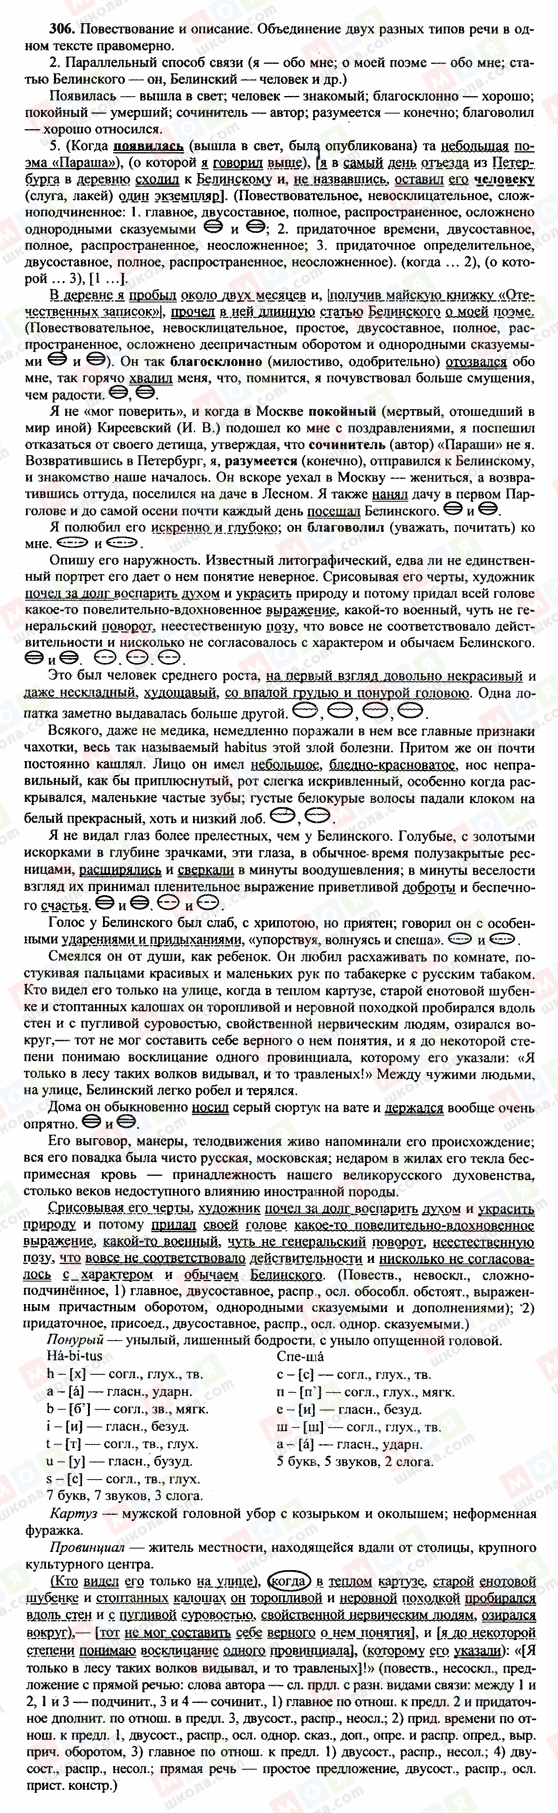 ГДЗ Російська мова 10 клас сторінка 306